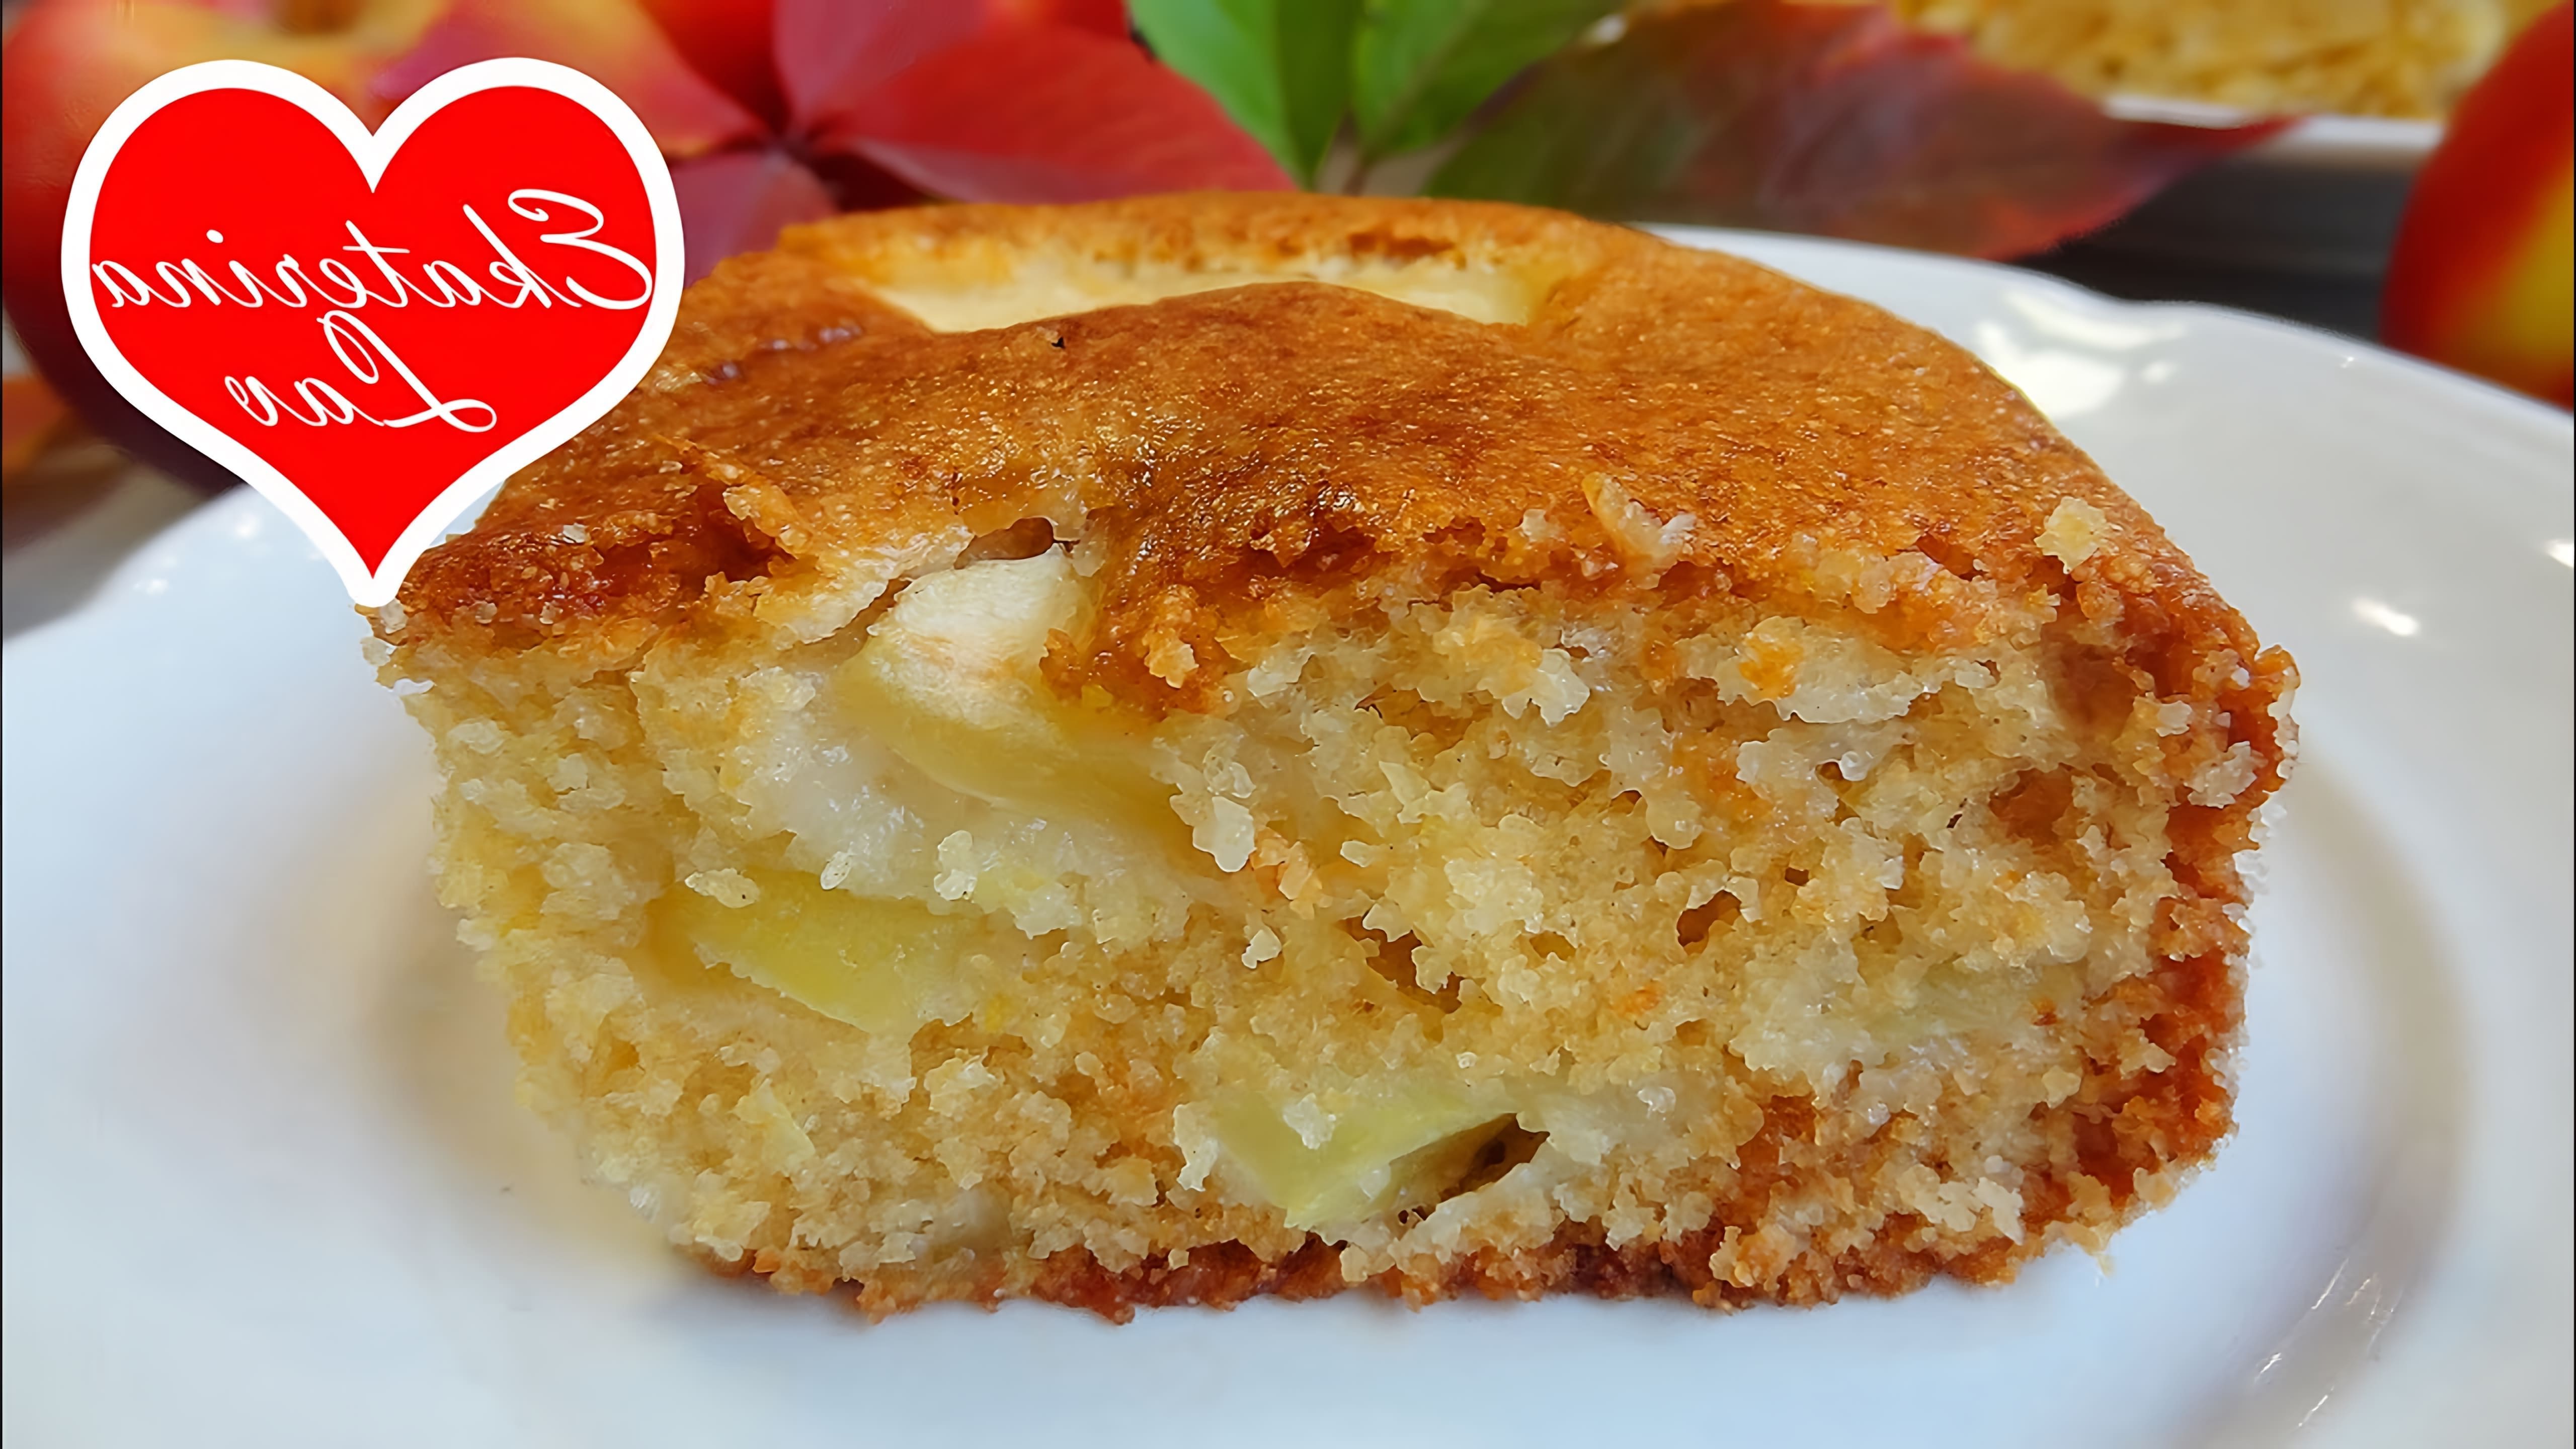 В этом видео демонстрируется рецепт яблочного пирога без яиц на кефире